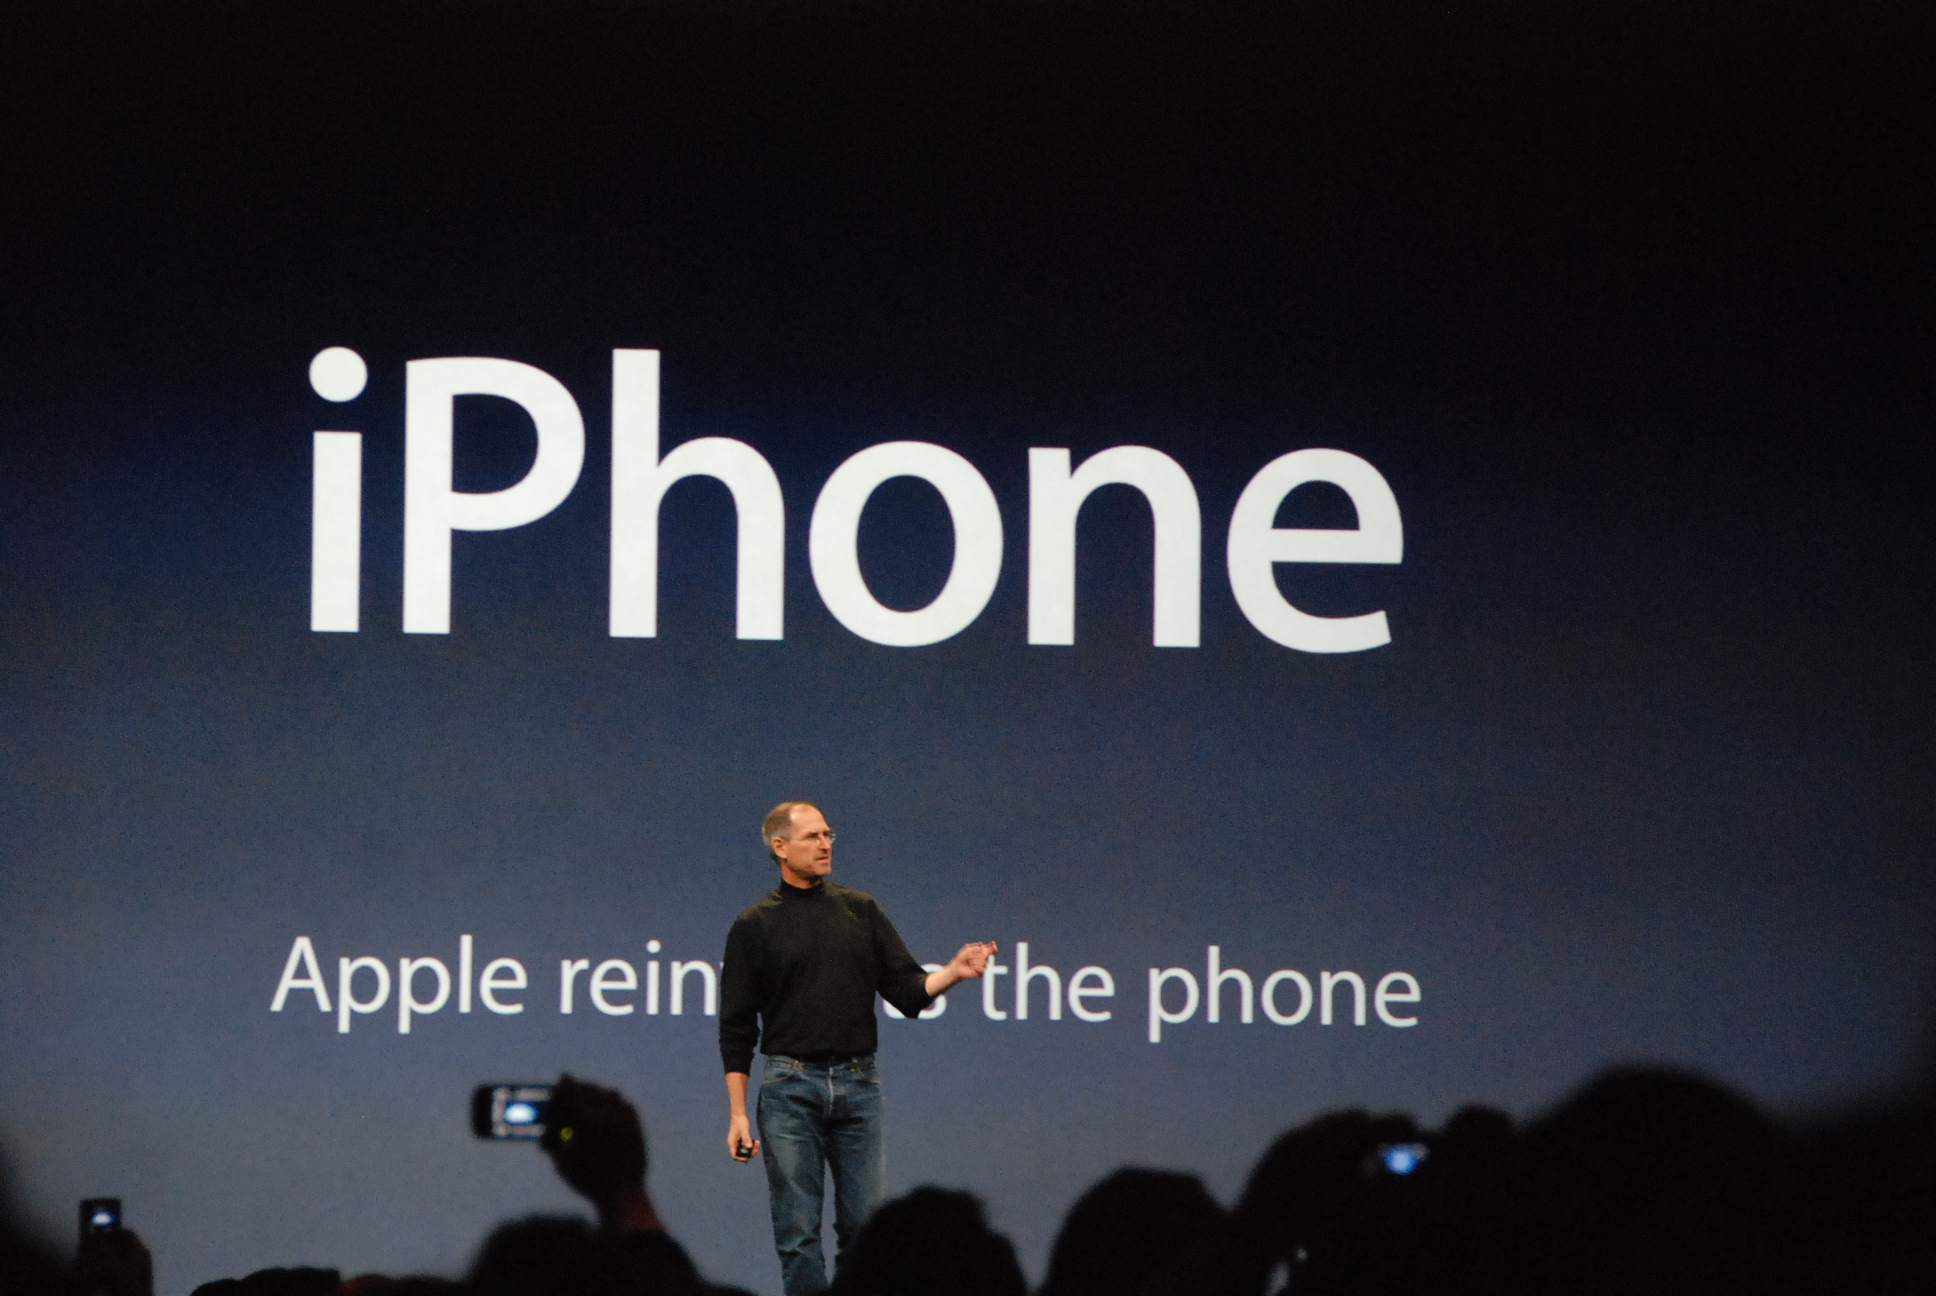 Steve Jobs debout devant la diapositive lors de l'introduction de l'iPhone en janvier 2007 montrant le slogan "Apple réinvente le téléphone"